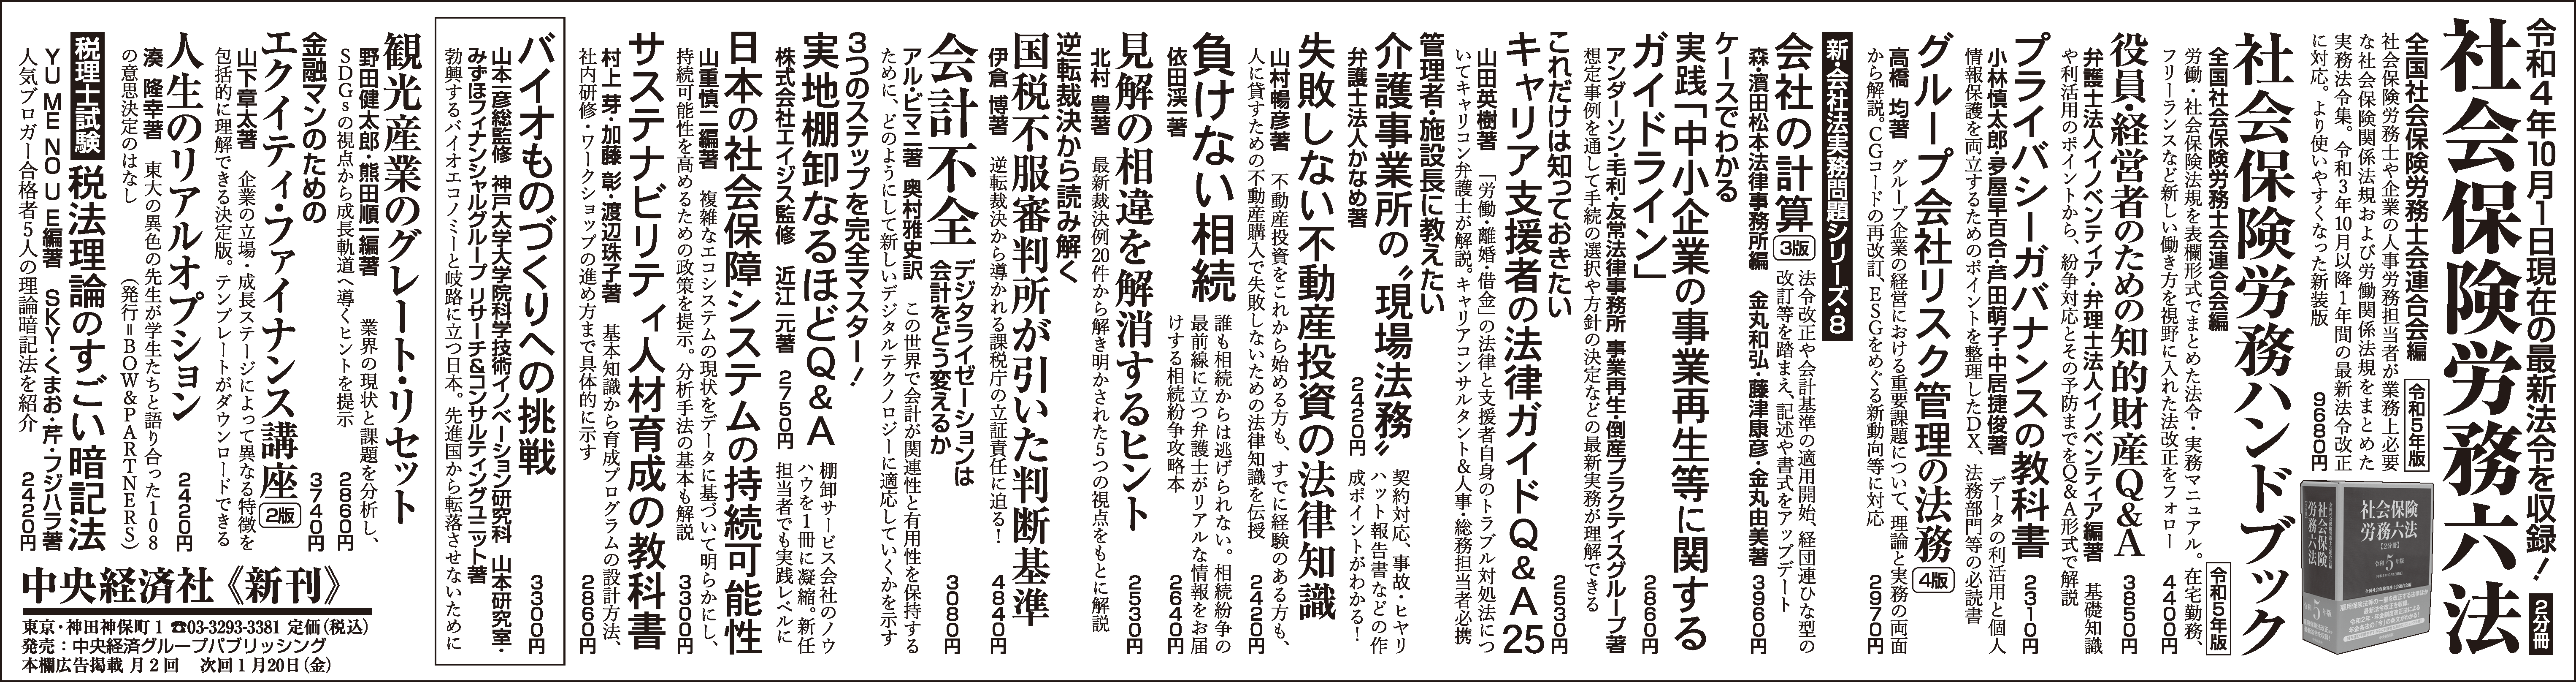 『日本経済新聞』広告